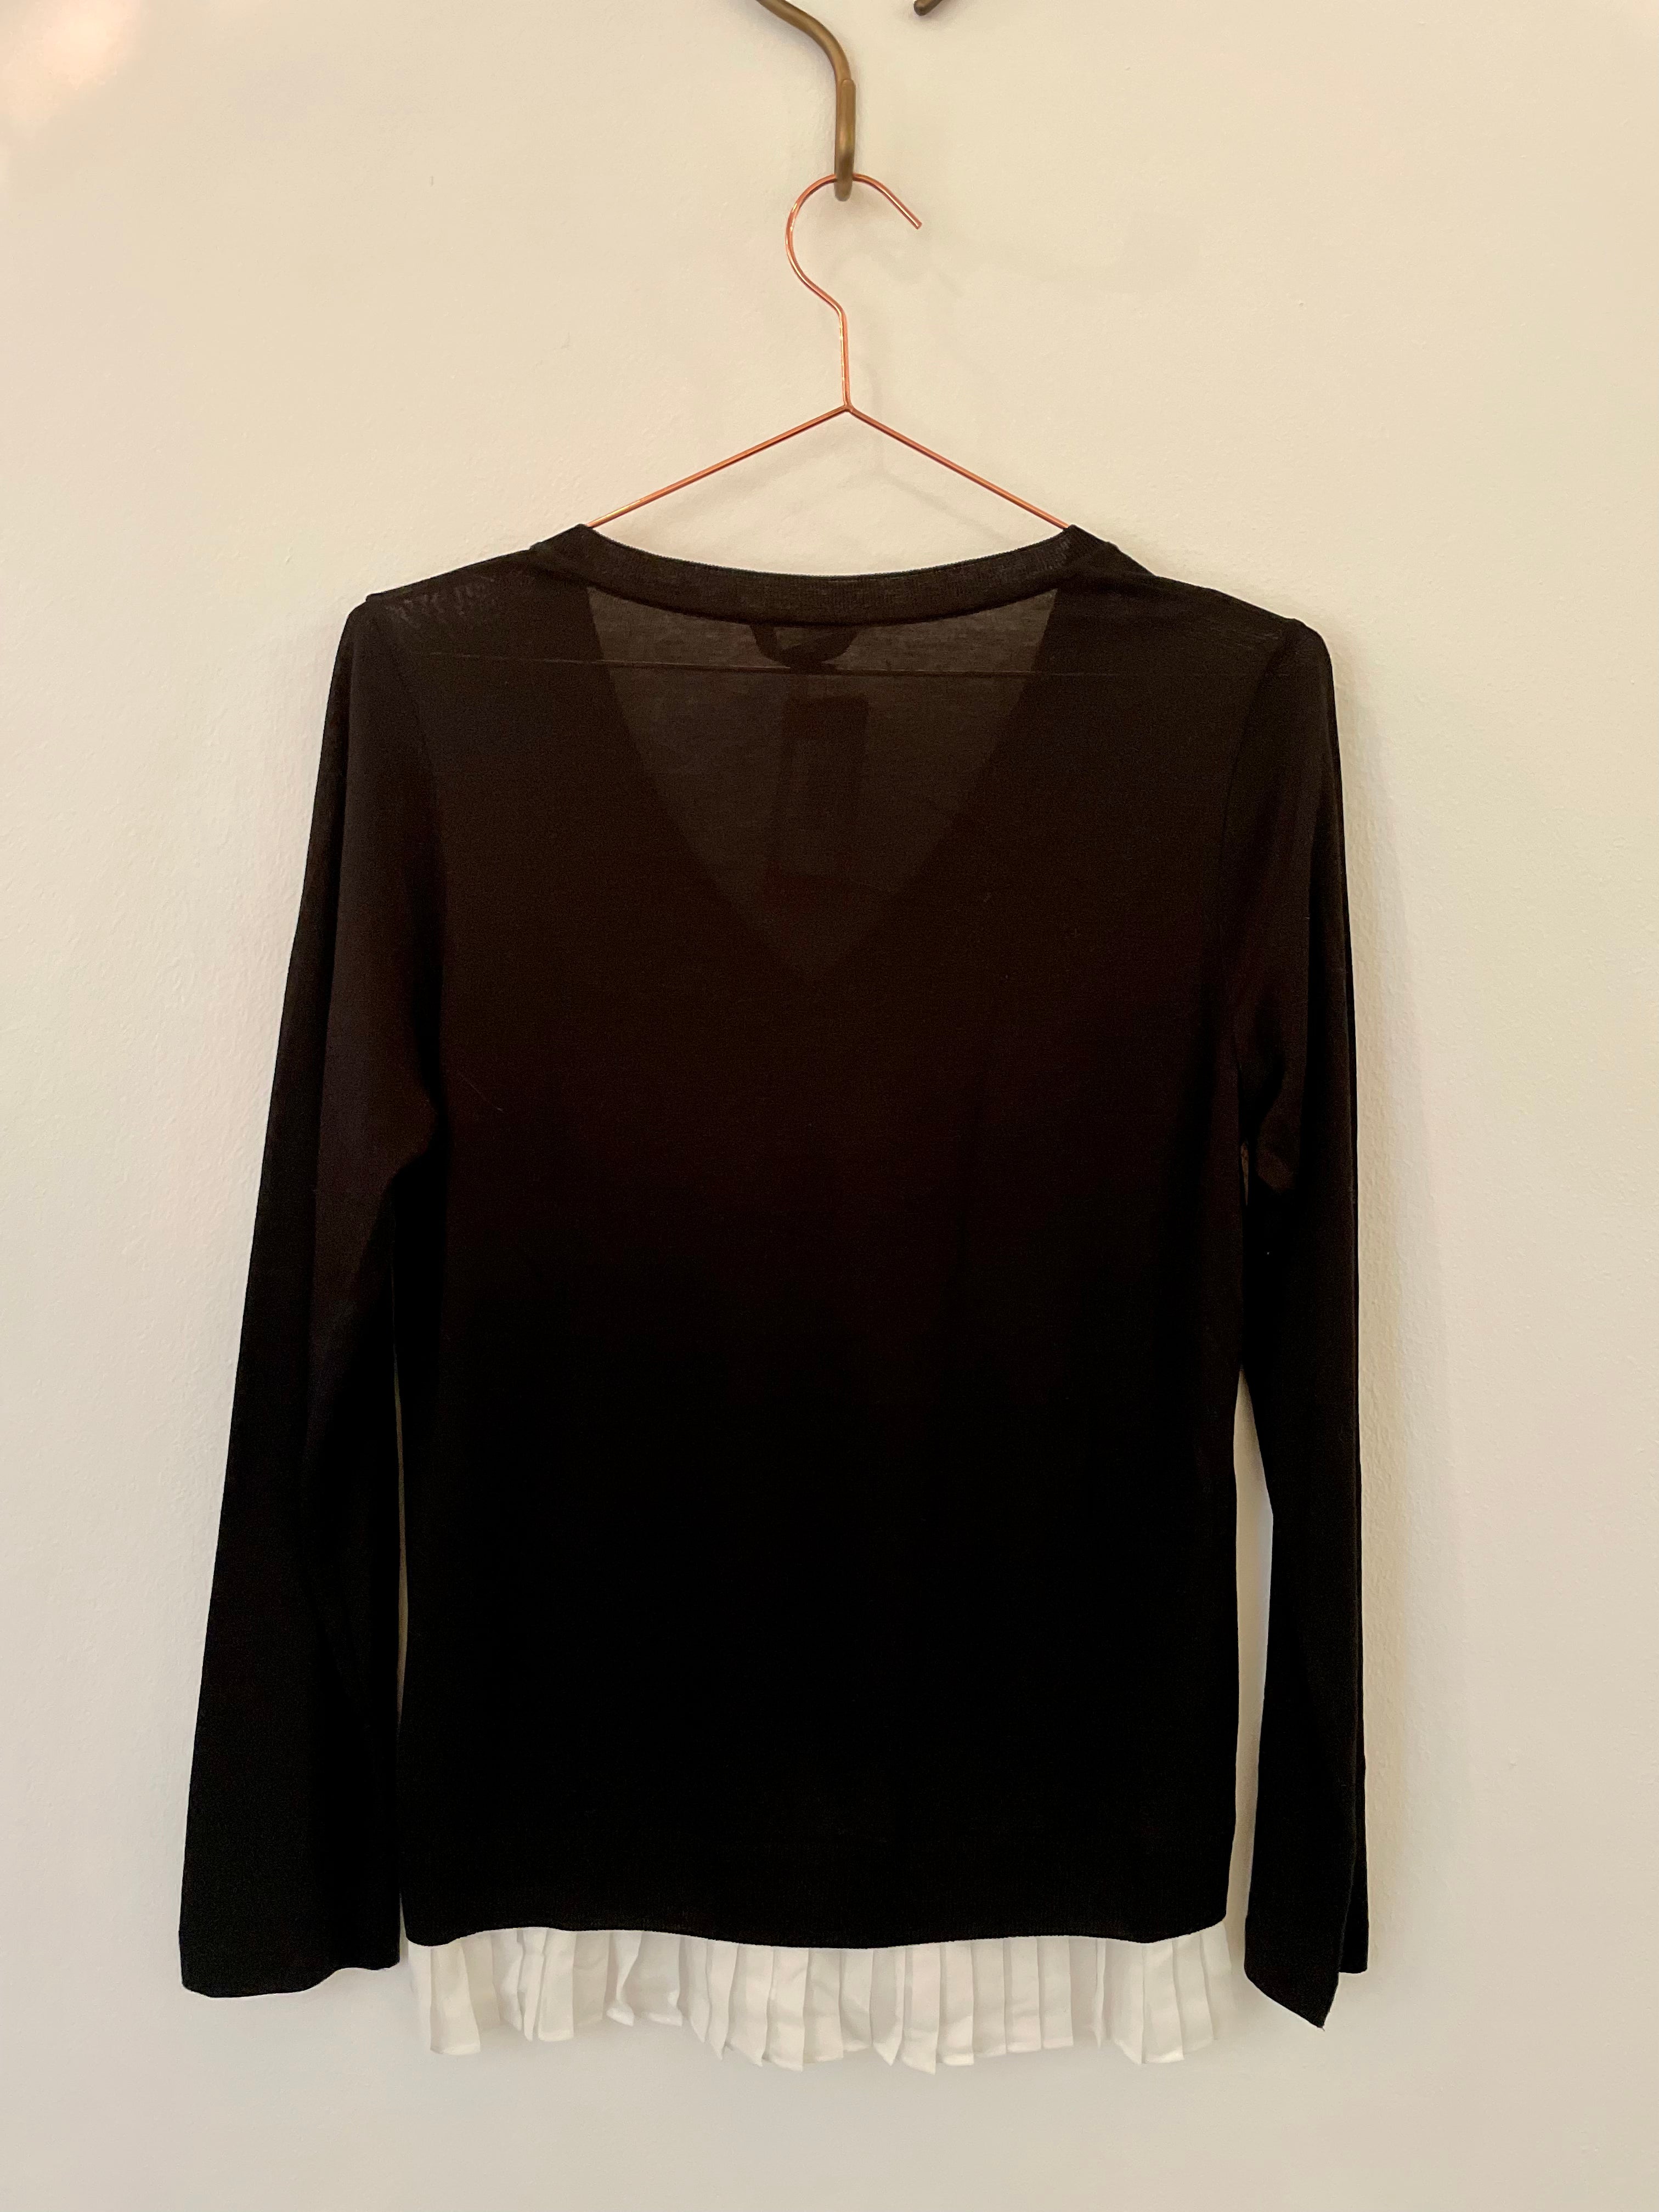 Black & white knit jumper - MASSIMO DUTTI - XS